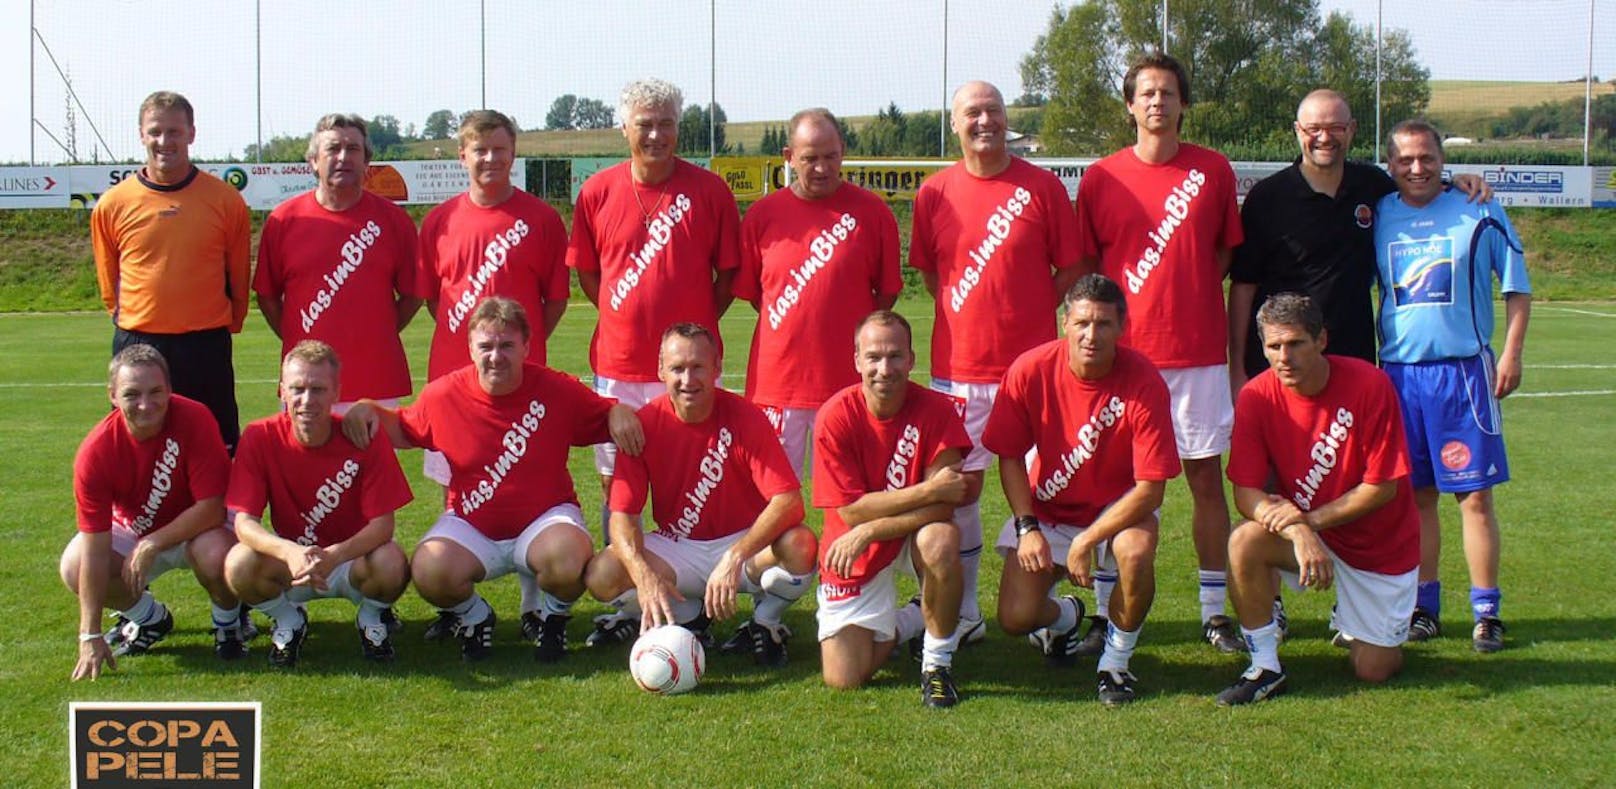 Zuletzt sorgte das Copa-Pele-Team mit dieser Formation für Furore.